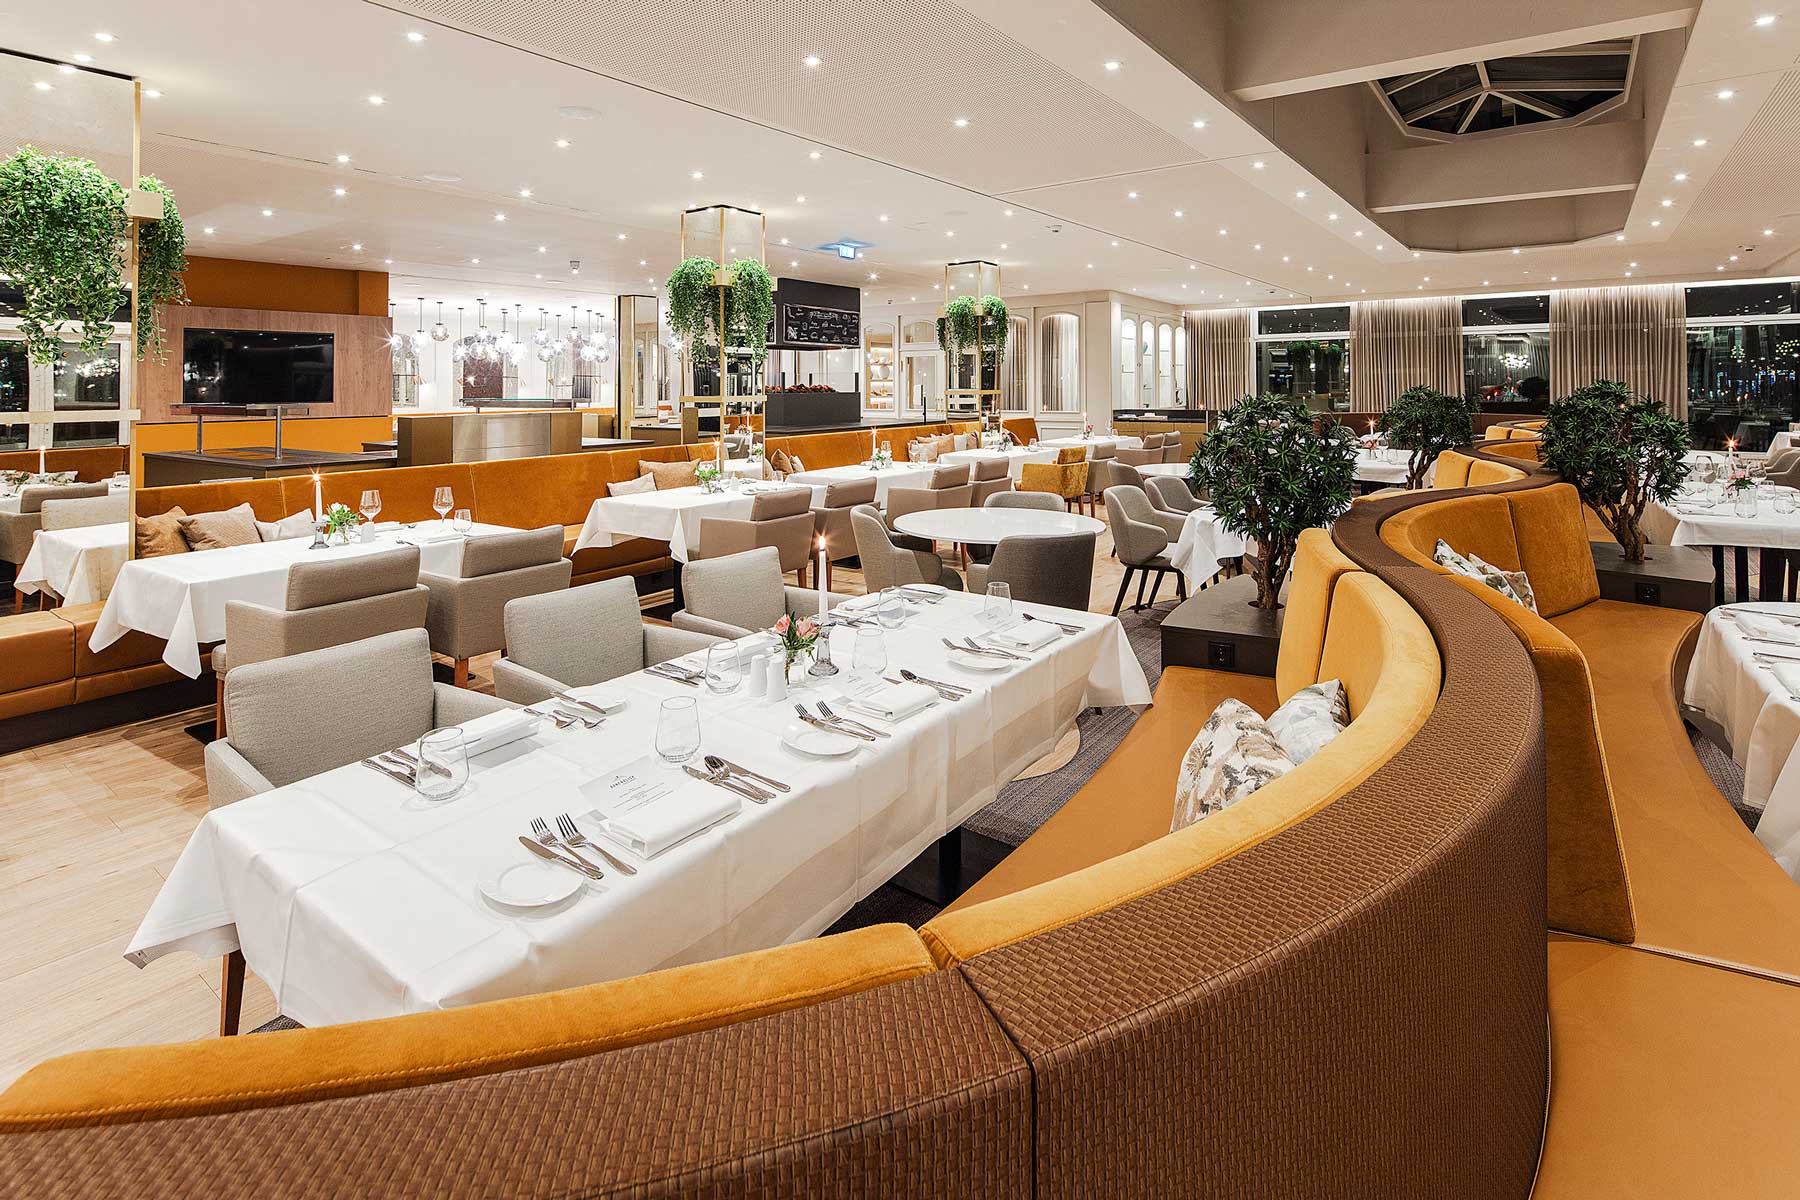 Modernes Ambiente im historischen Umfeld: das Dünenblick Restaurant im Ostseehotel wird von seinen Gästen wegen der regionalen Küche geschätzt.